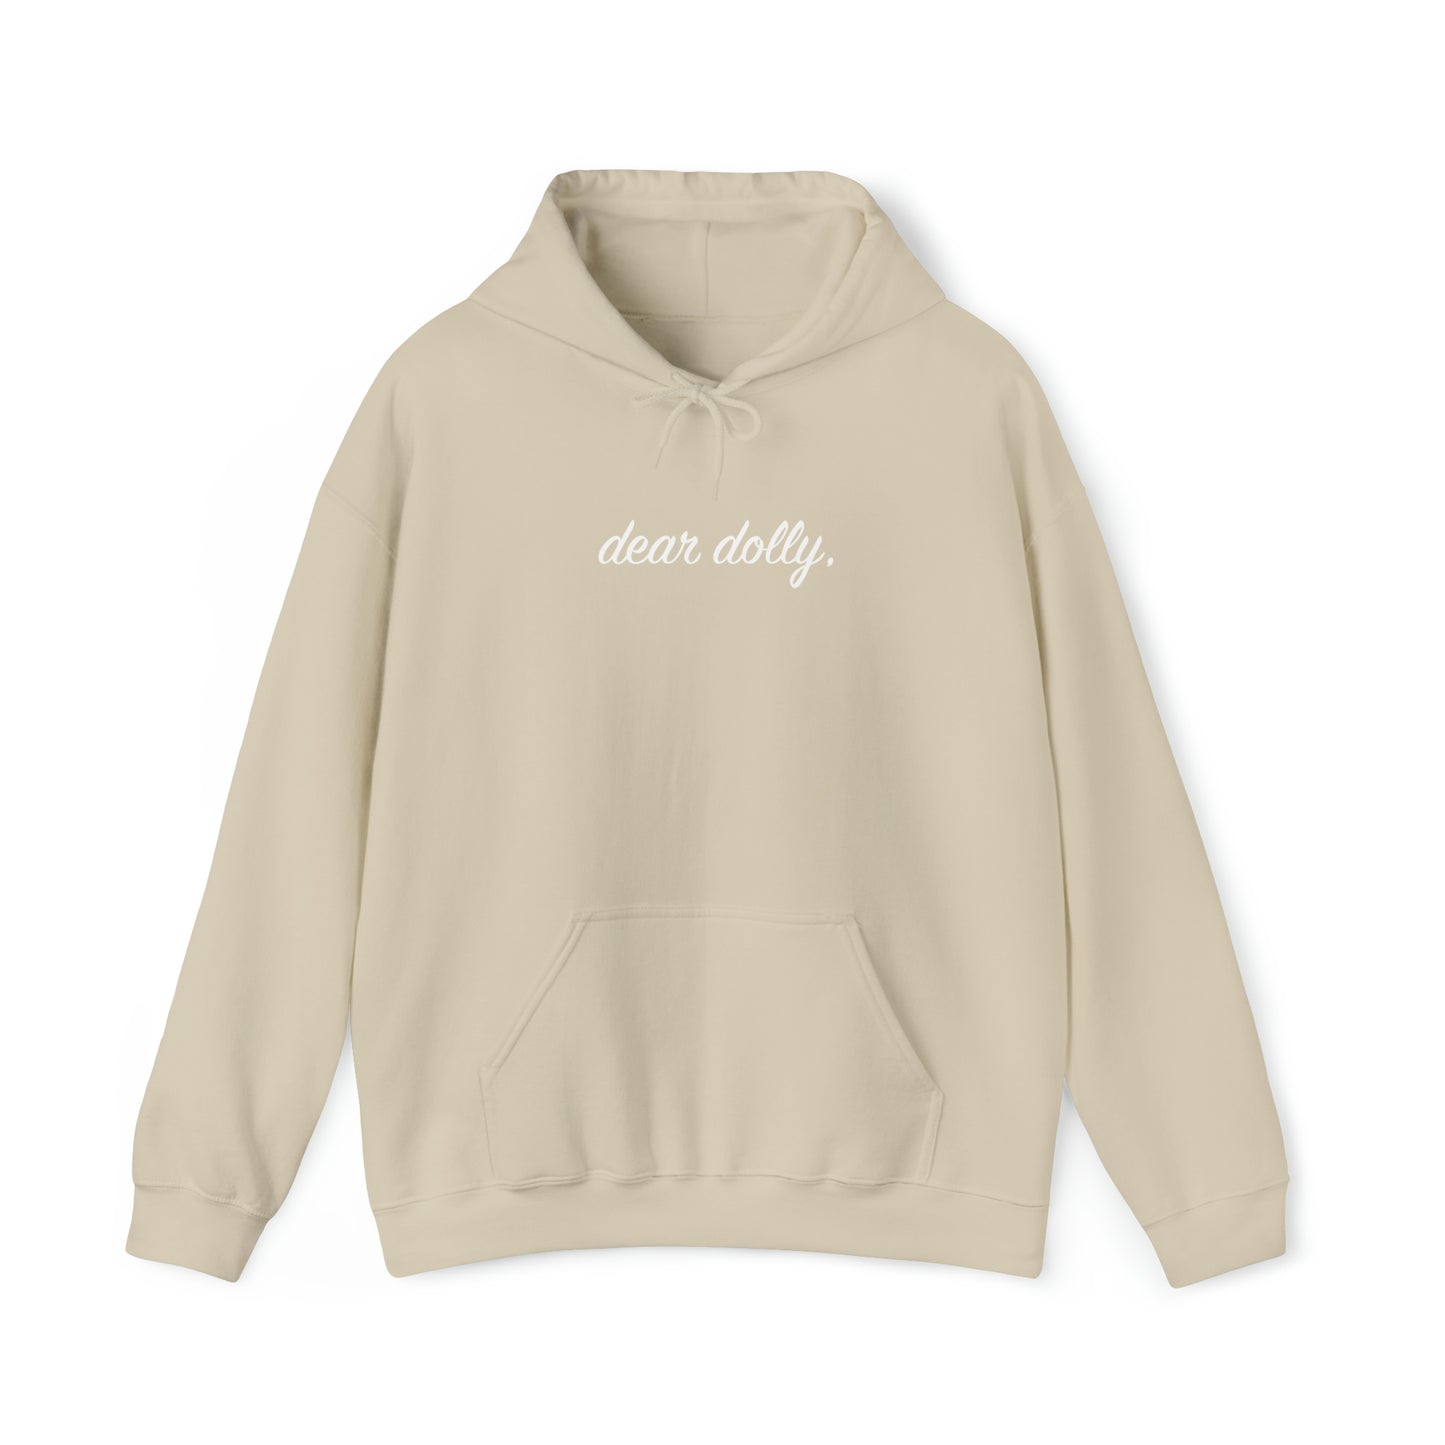 Dear Dolly Hooded Sweatshirt